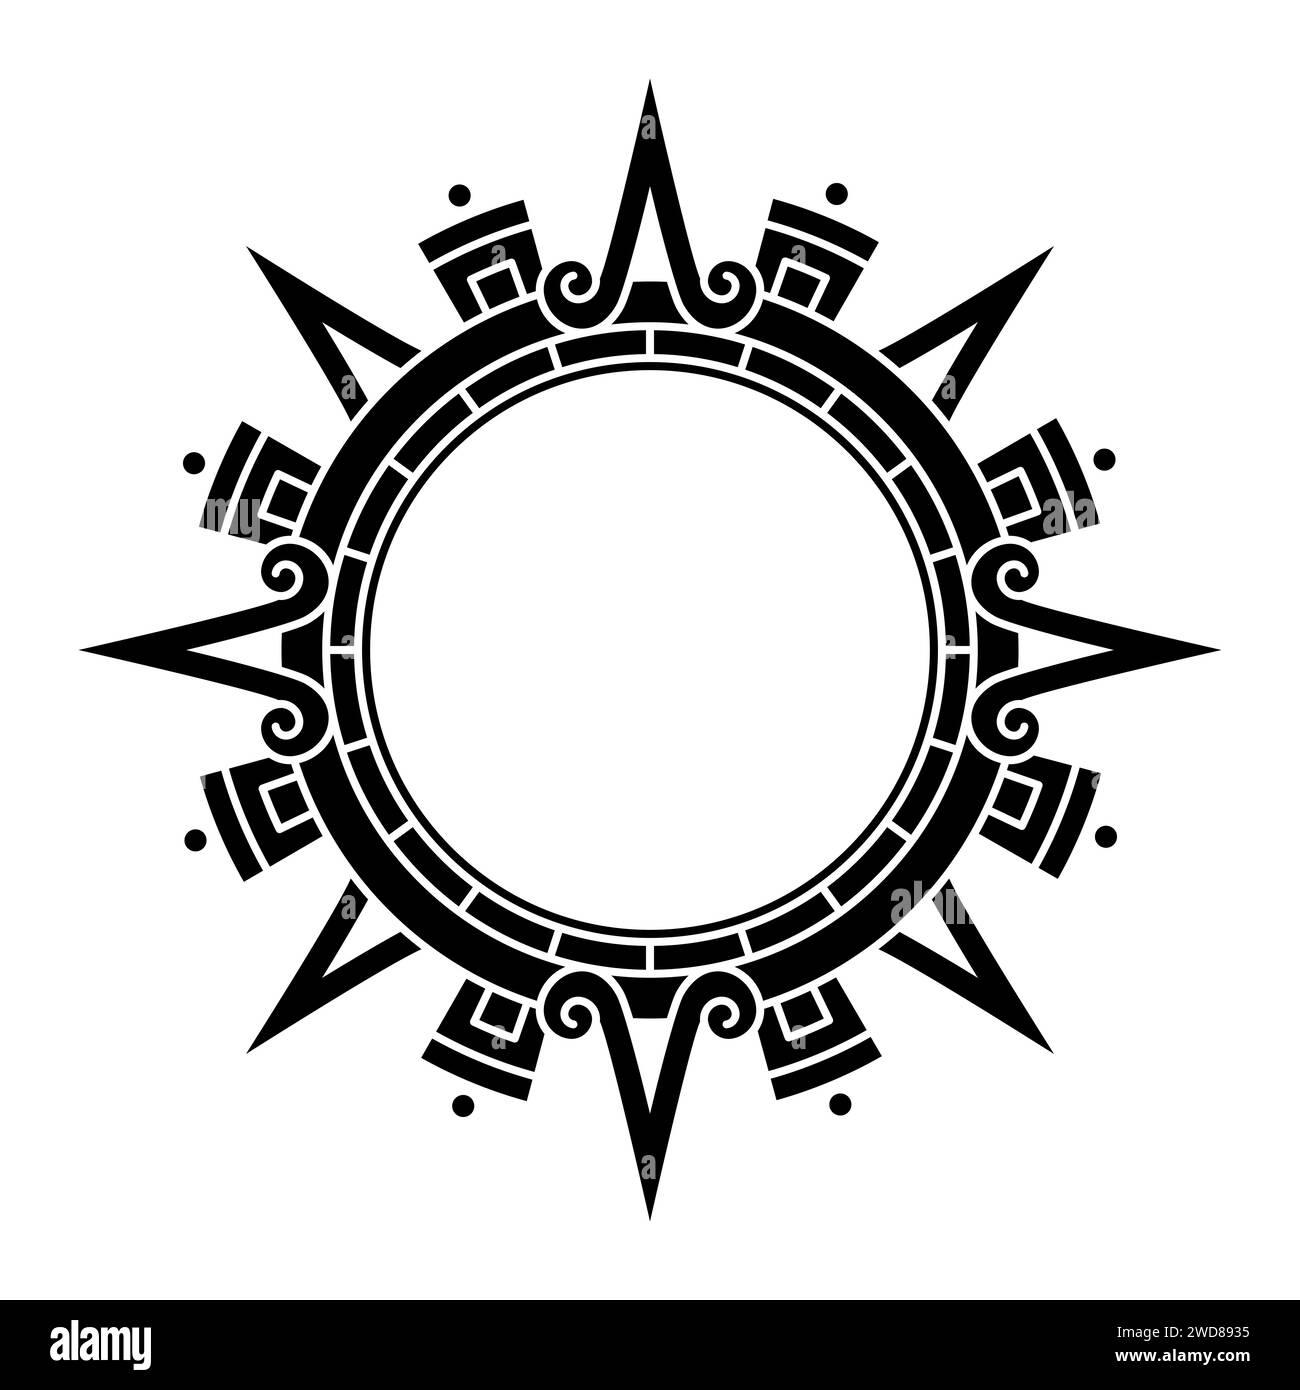 Aztekische Sonnenscheibe, Sonnensymbol und Diadem, die aztekische Sonnengottheit Tonatiuh repräsentieren. Hauptpfeile oder Sonnenstrahlen, die in die Kardinalrichtungen zeigen. Stockfoto